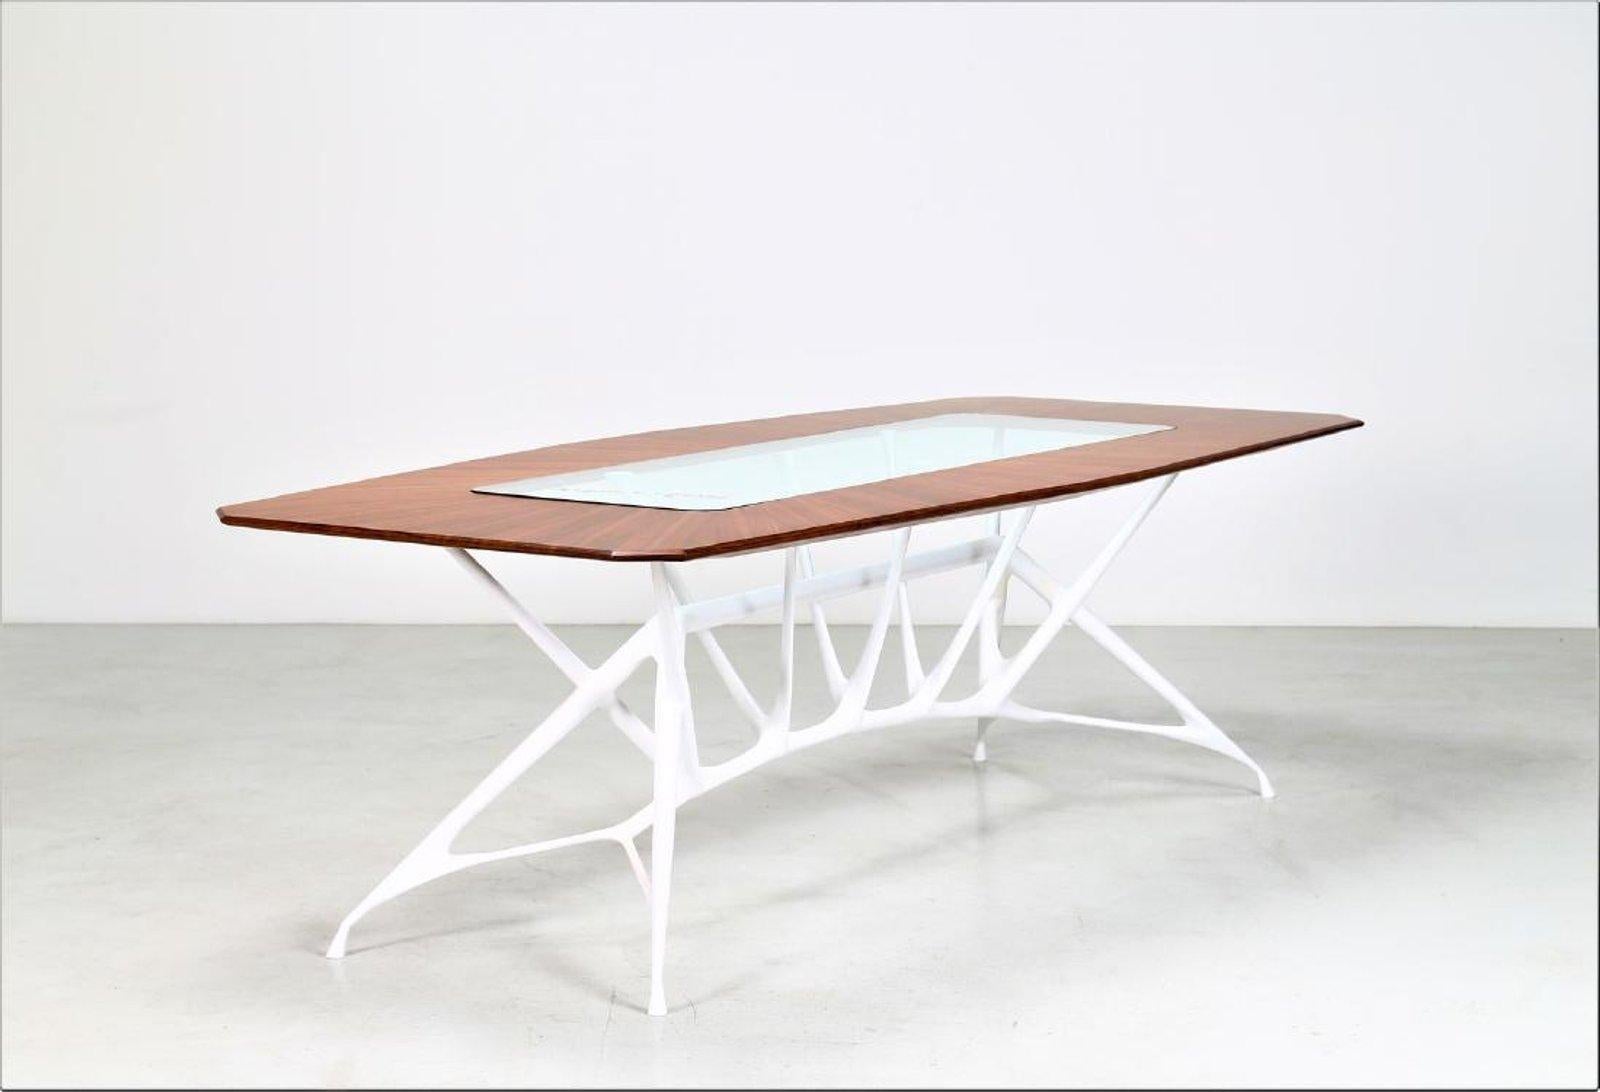 Table de salle à manger architecturale contemporaine conçue par L'Opere e i Giorni. 
Plateau en bois avec insert en verre et pieds en métal peint et en fibre de verre.
Signé en dessous : L'Opere e i Giorni